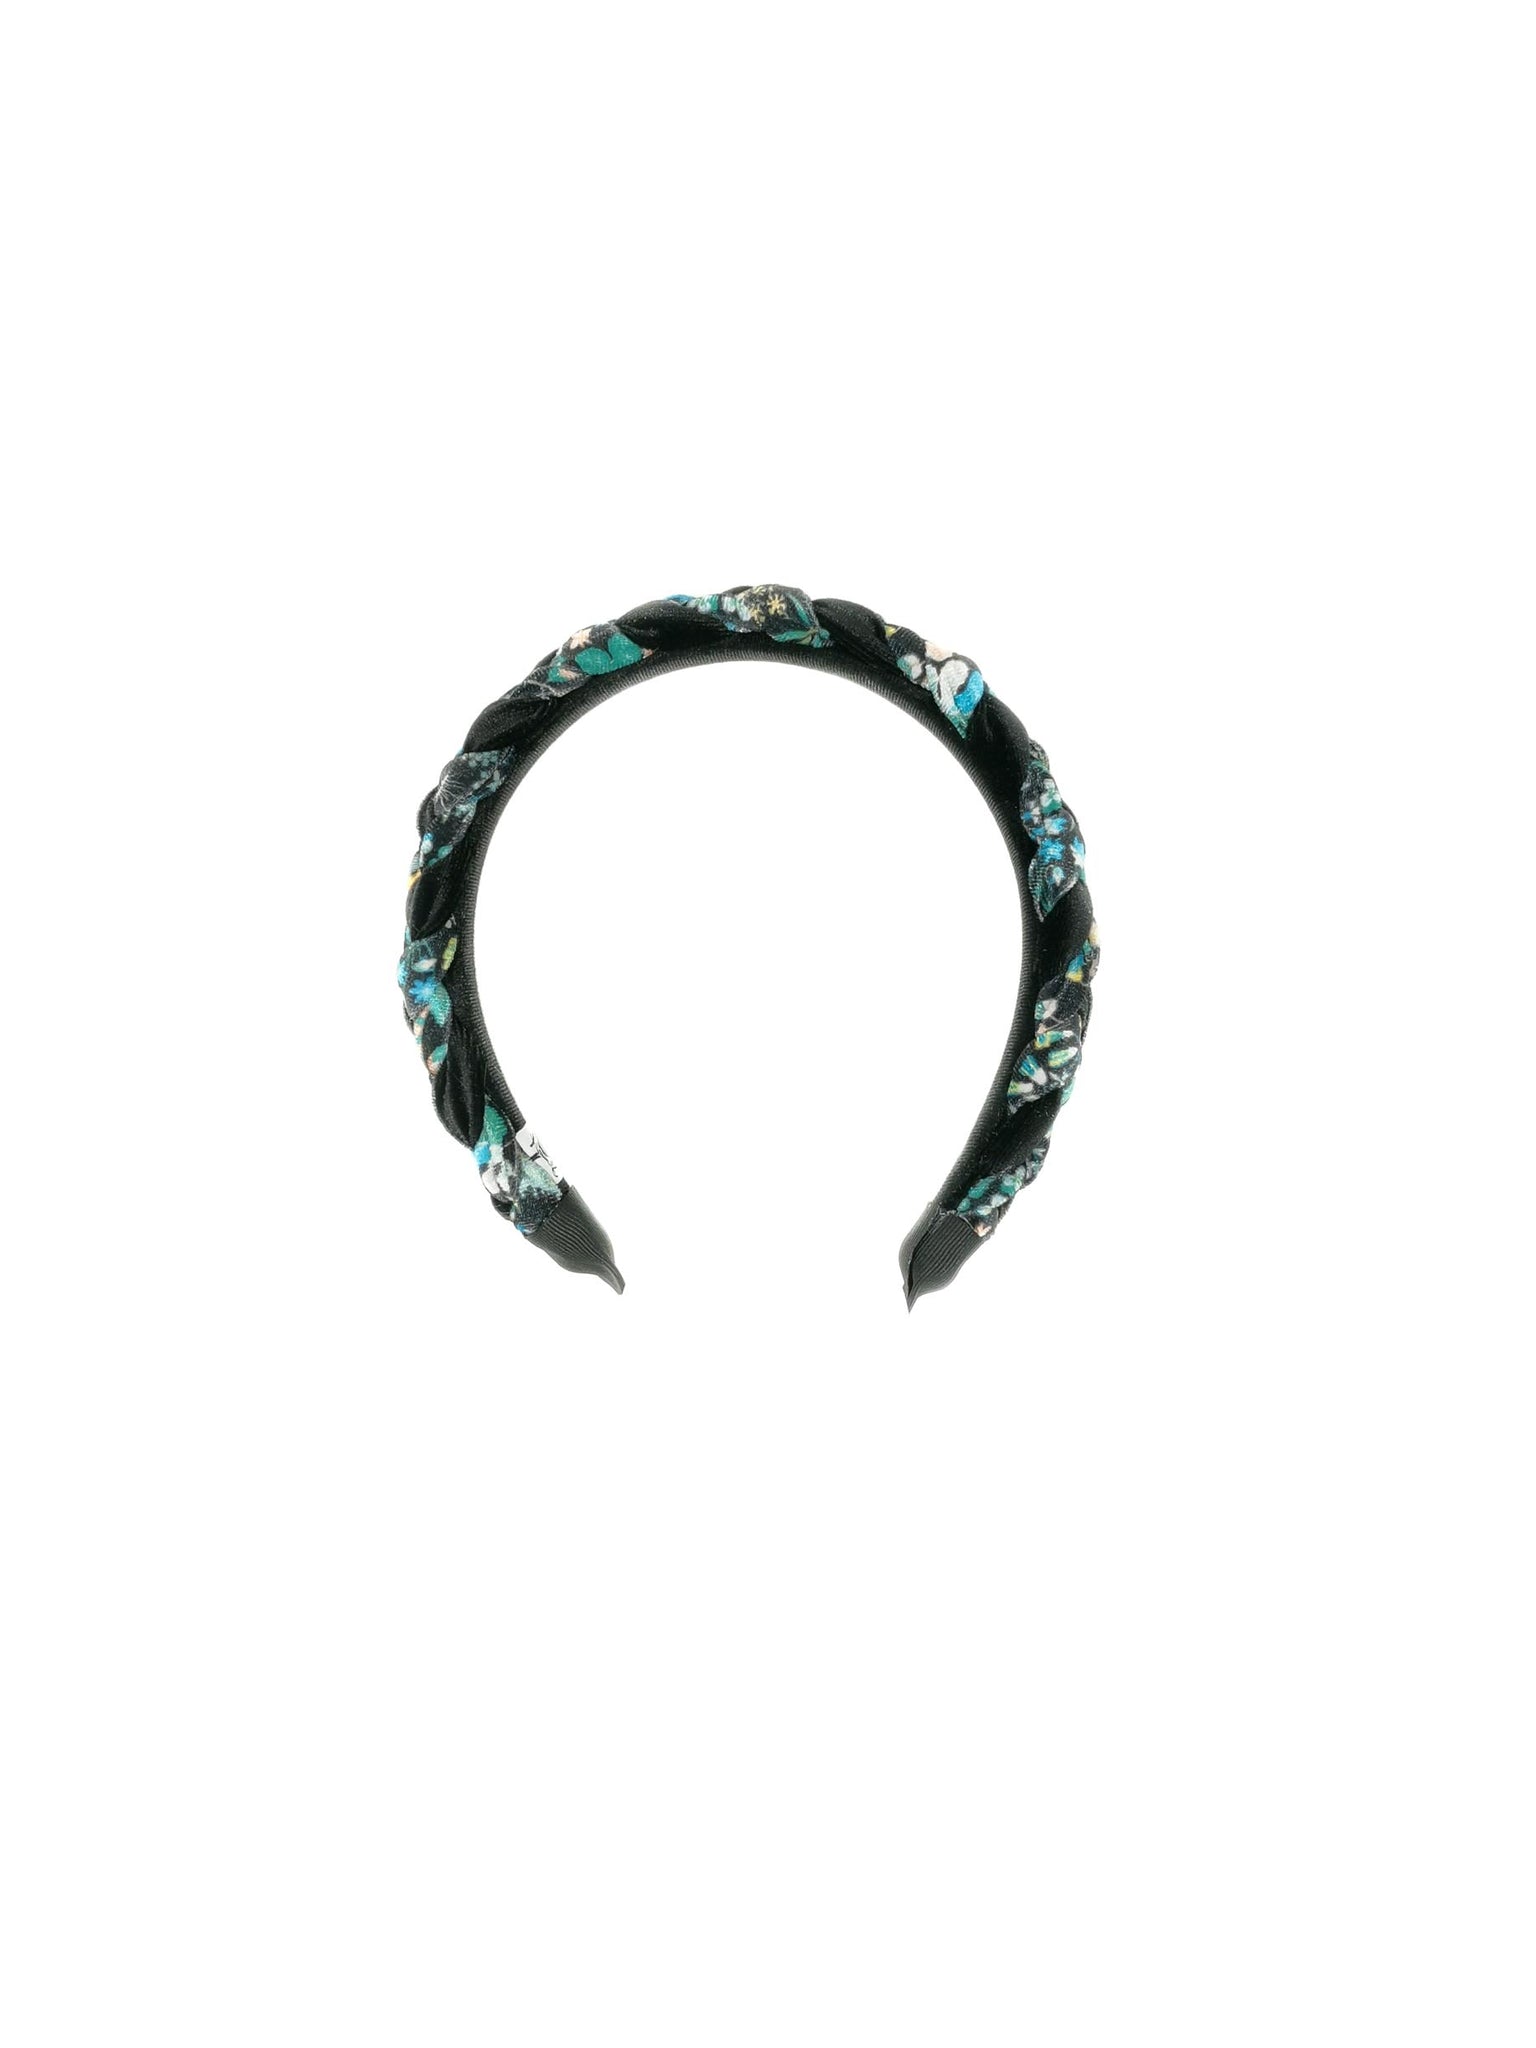 "Mini Frida" hairband in black velvet and green flower pattern